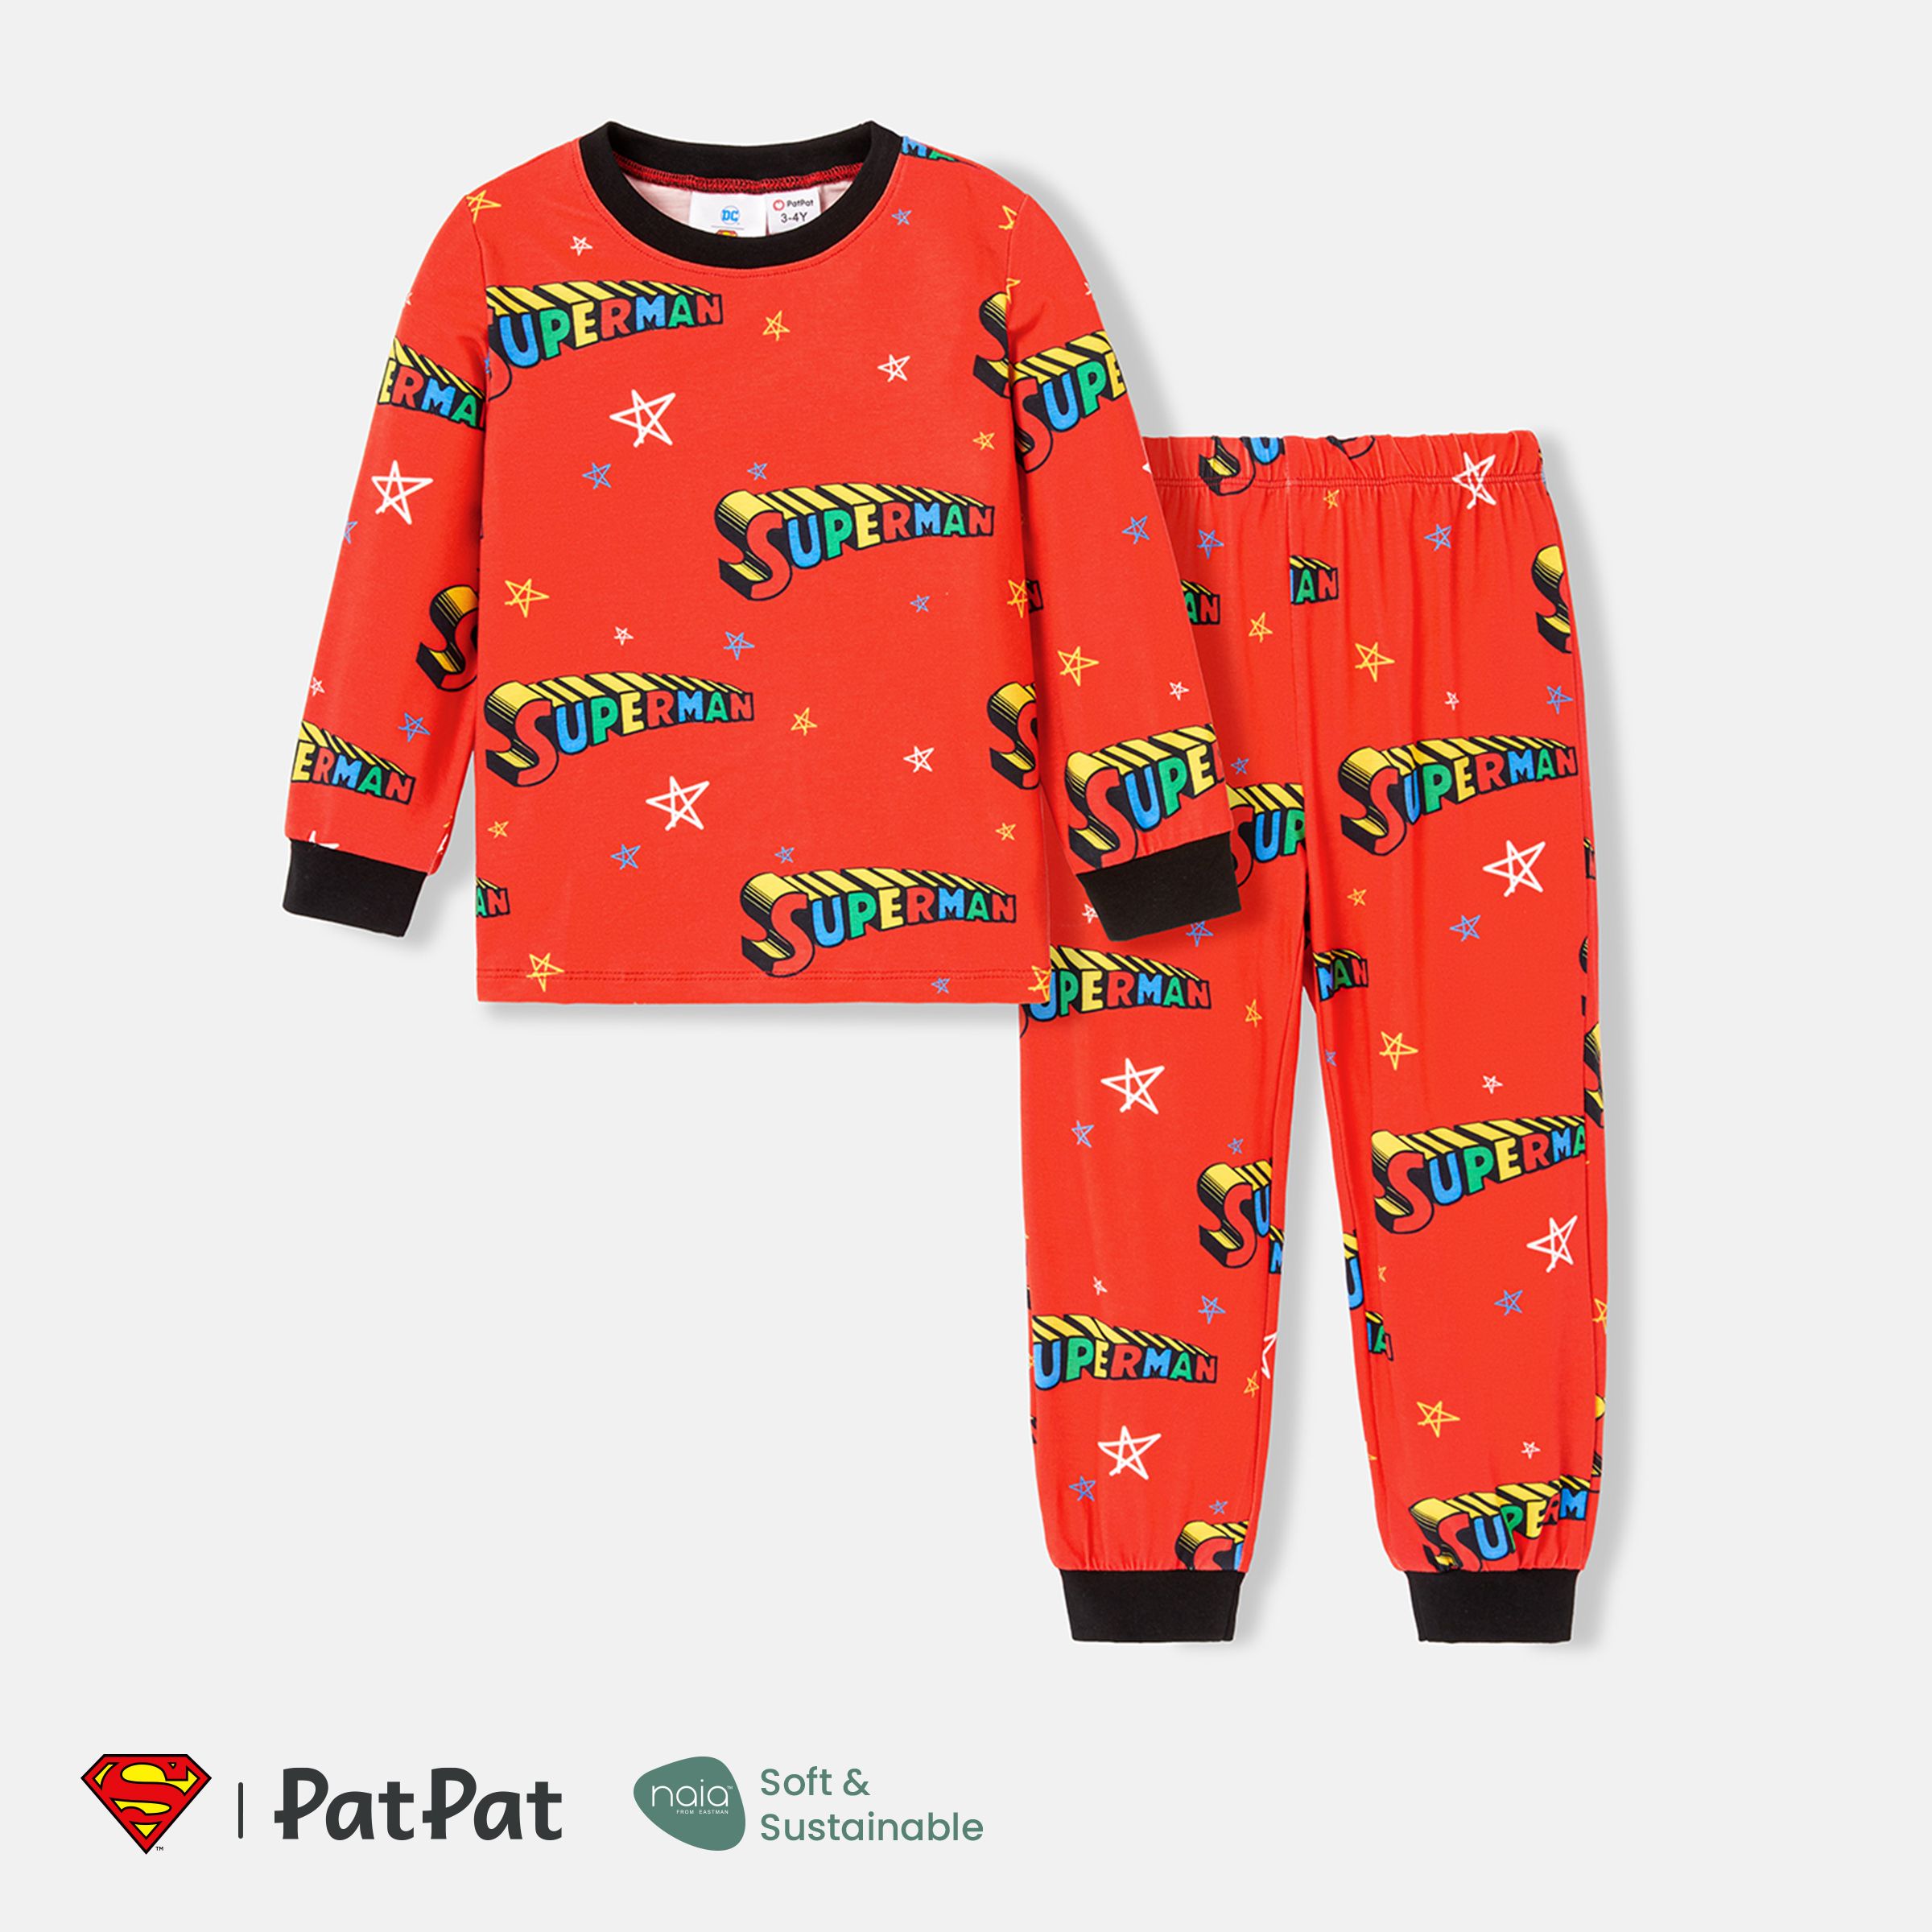 Justice League Toddler Girl/Boy 2pcs Naiaâ¢ Allover Print Long-sleeve Top And Pants Set